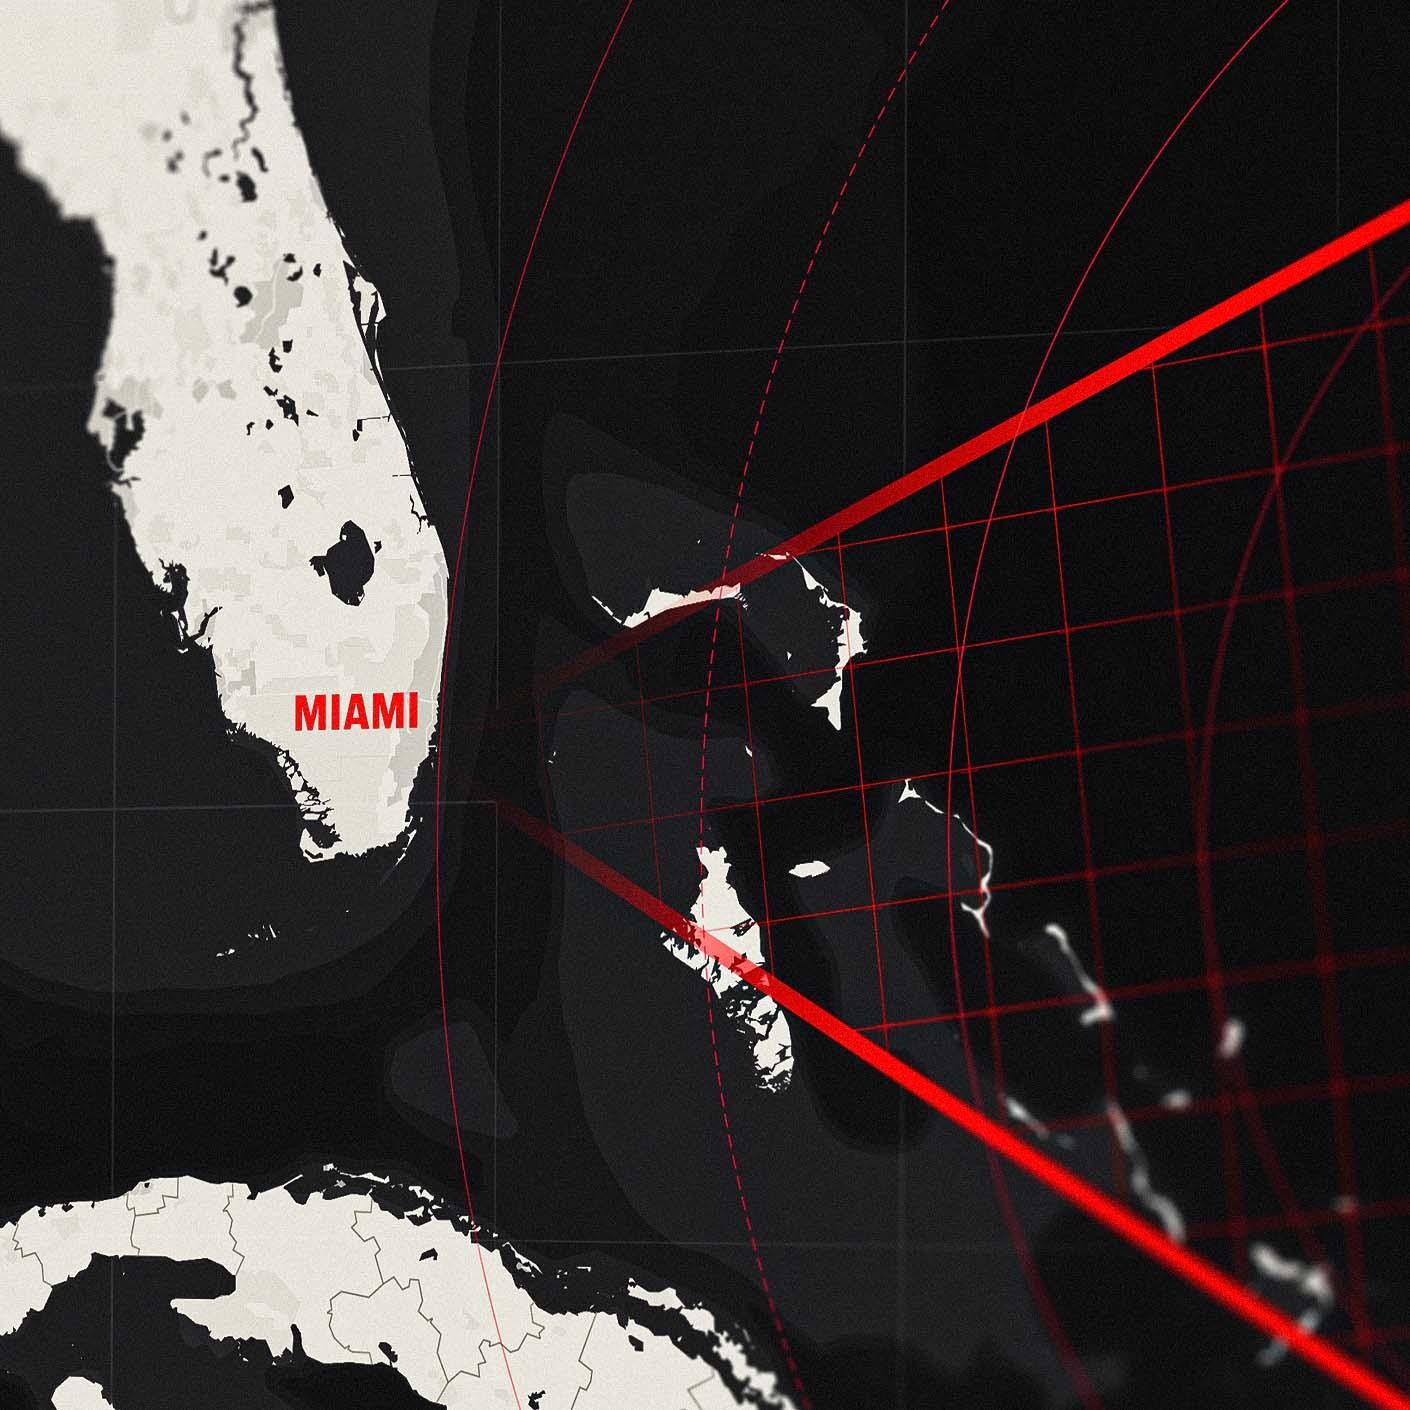 Bermuda Triangle - Conspirate